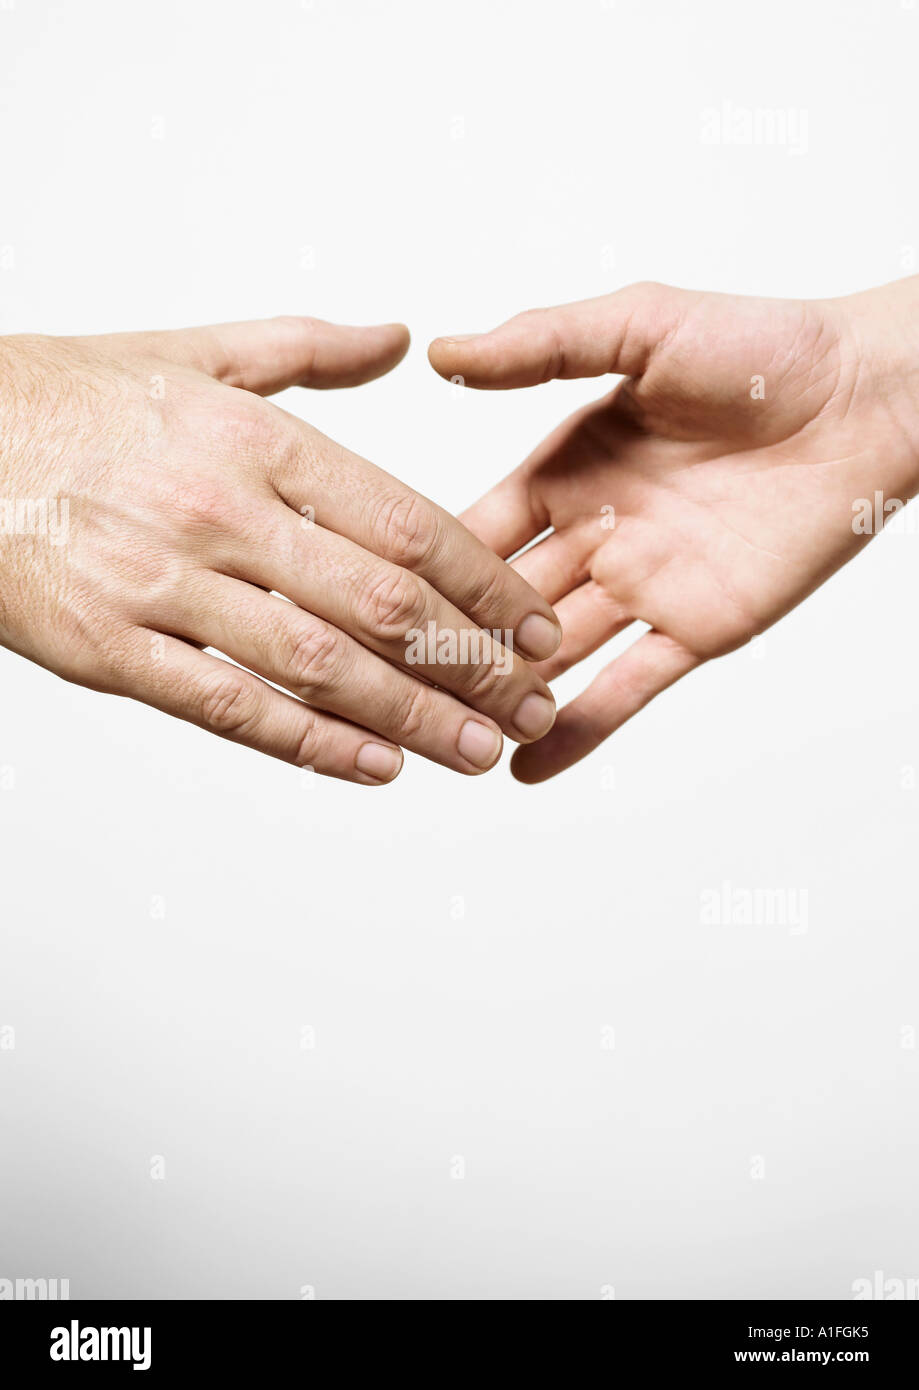 Тактильные средства общения. Рука помощи. Приветствие руками. Две руки. Рукопожатия, прикосновения.